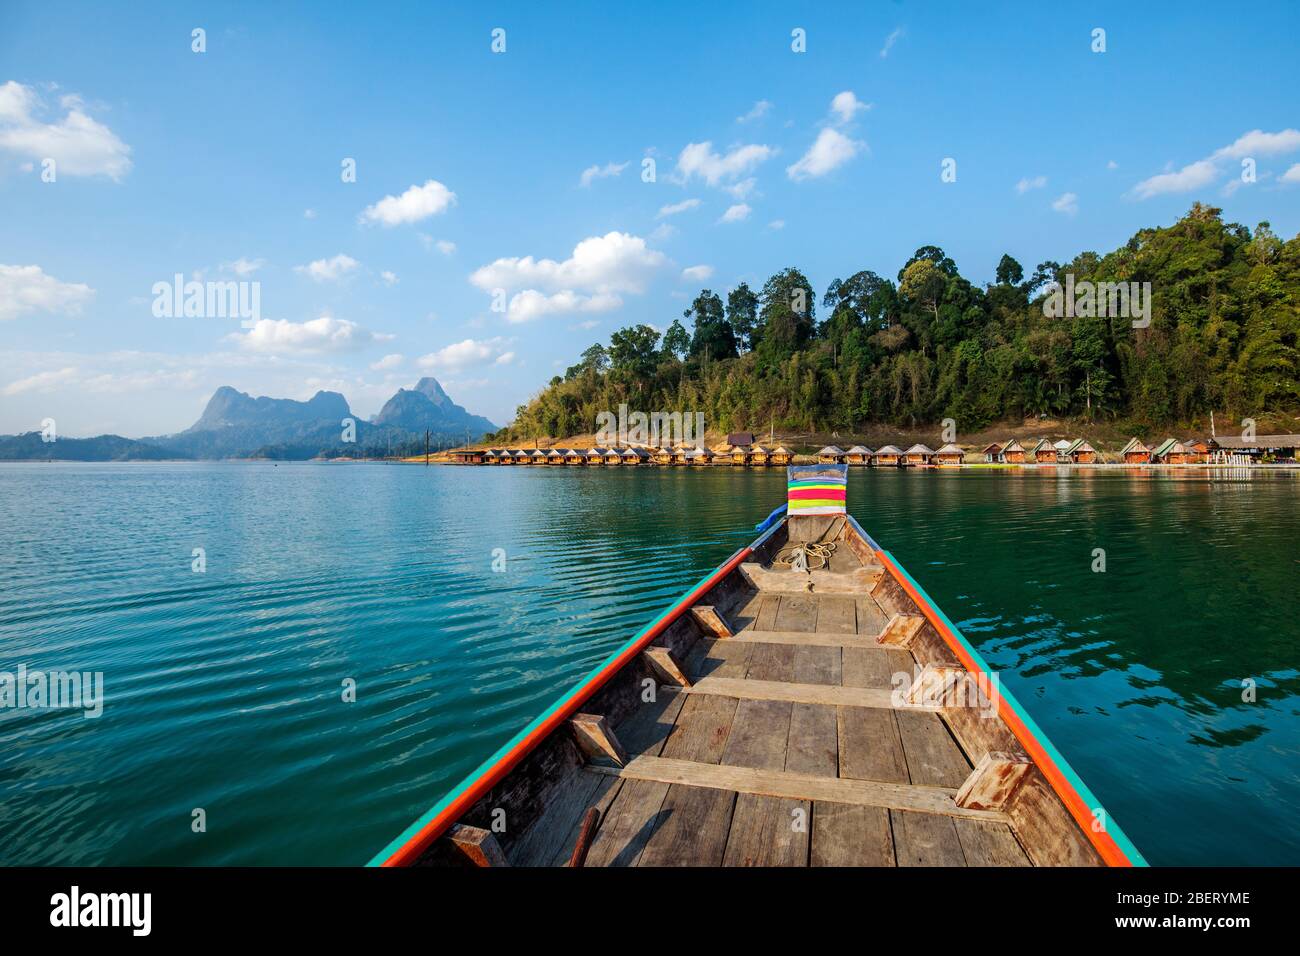 Tradizionale barca tailandese a coda lunga in legno sul lago Cheow LAN arrivo a bungalow galleggianti capanne nel Parco Nazionale di Khao Sok, Thailandia Foto Stock